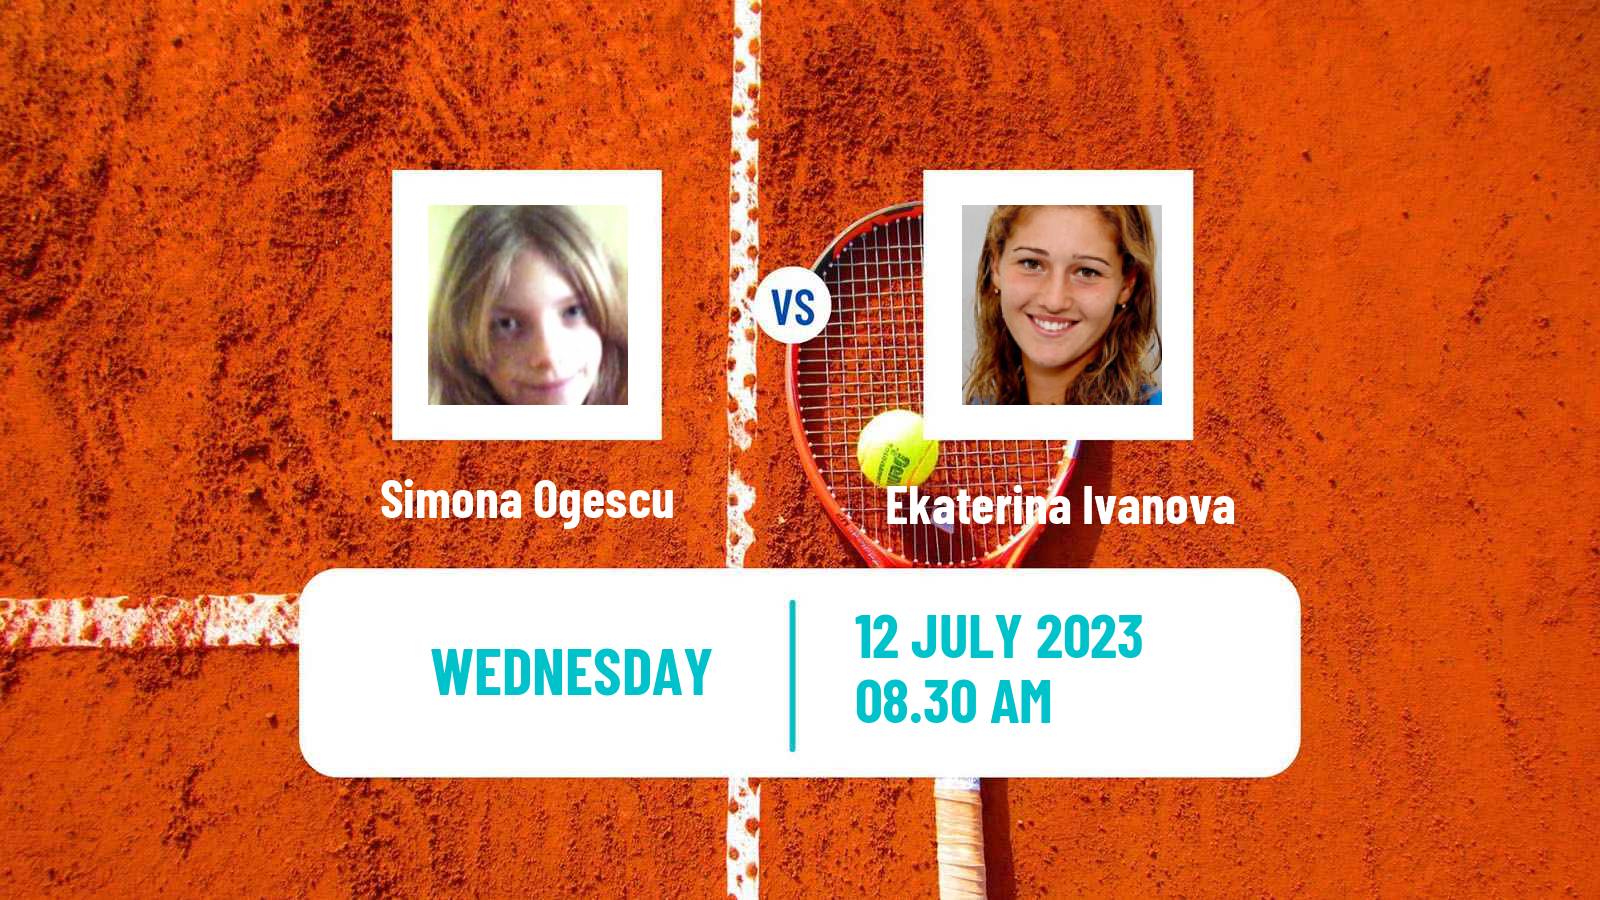 Tennis ITF W15 Bacau Women Simona Ogescu - Ekaterina Ivanova